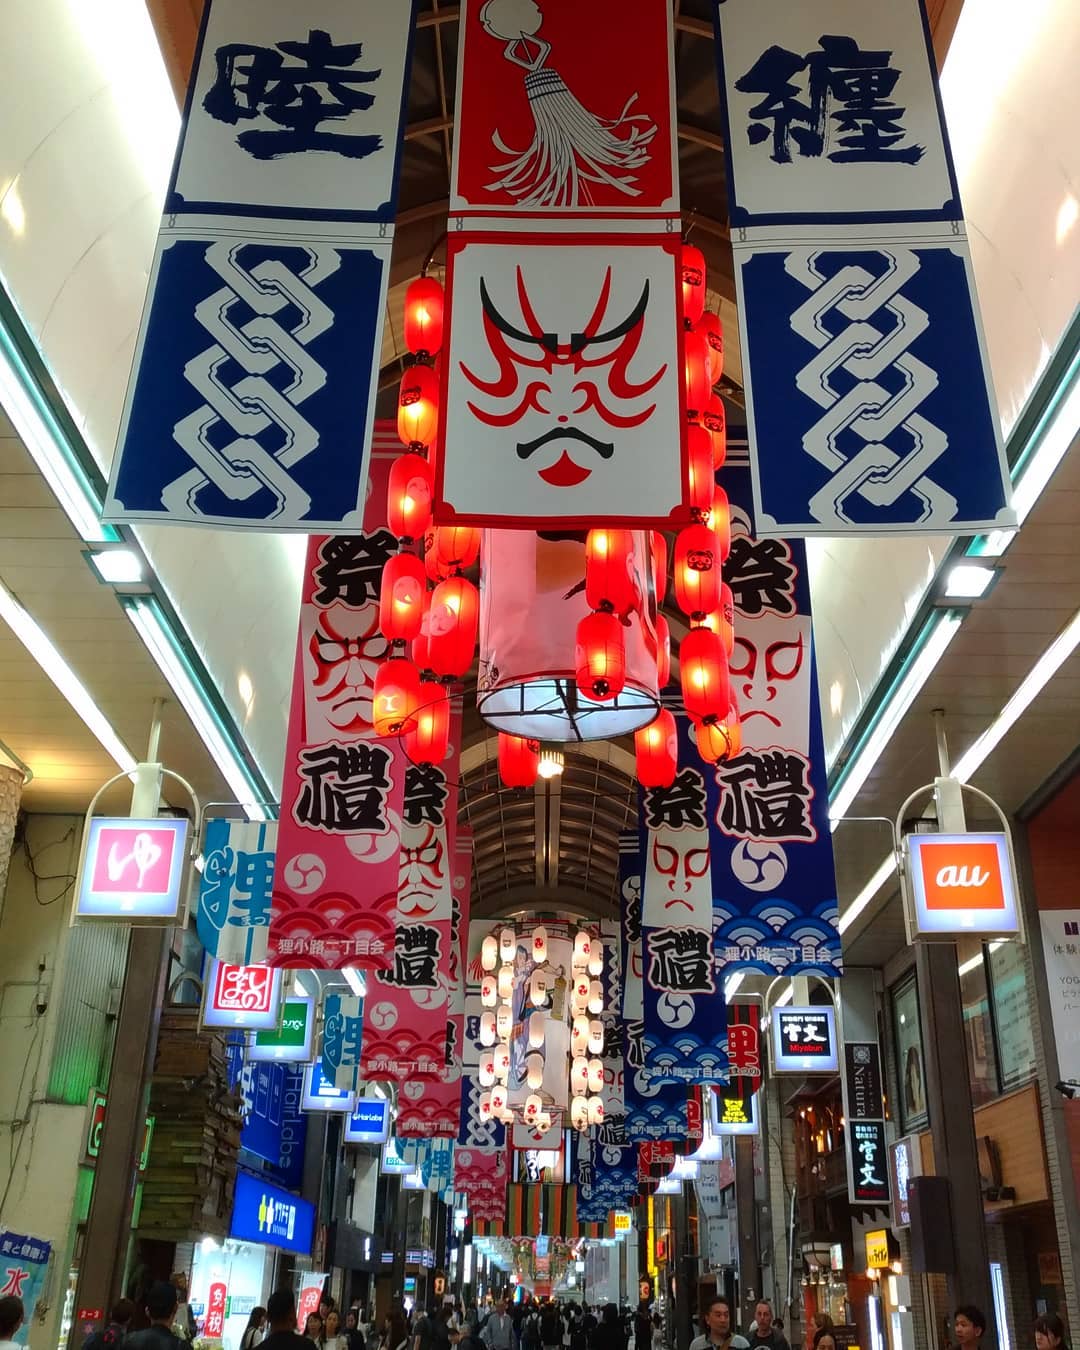 many banners at Tanukikoji shopping arcade